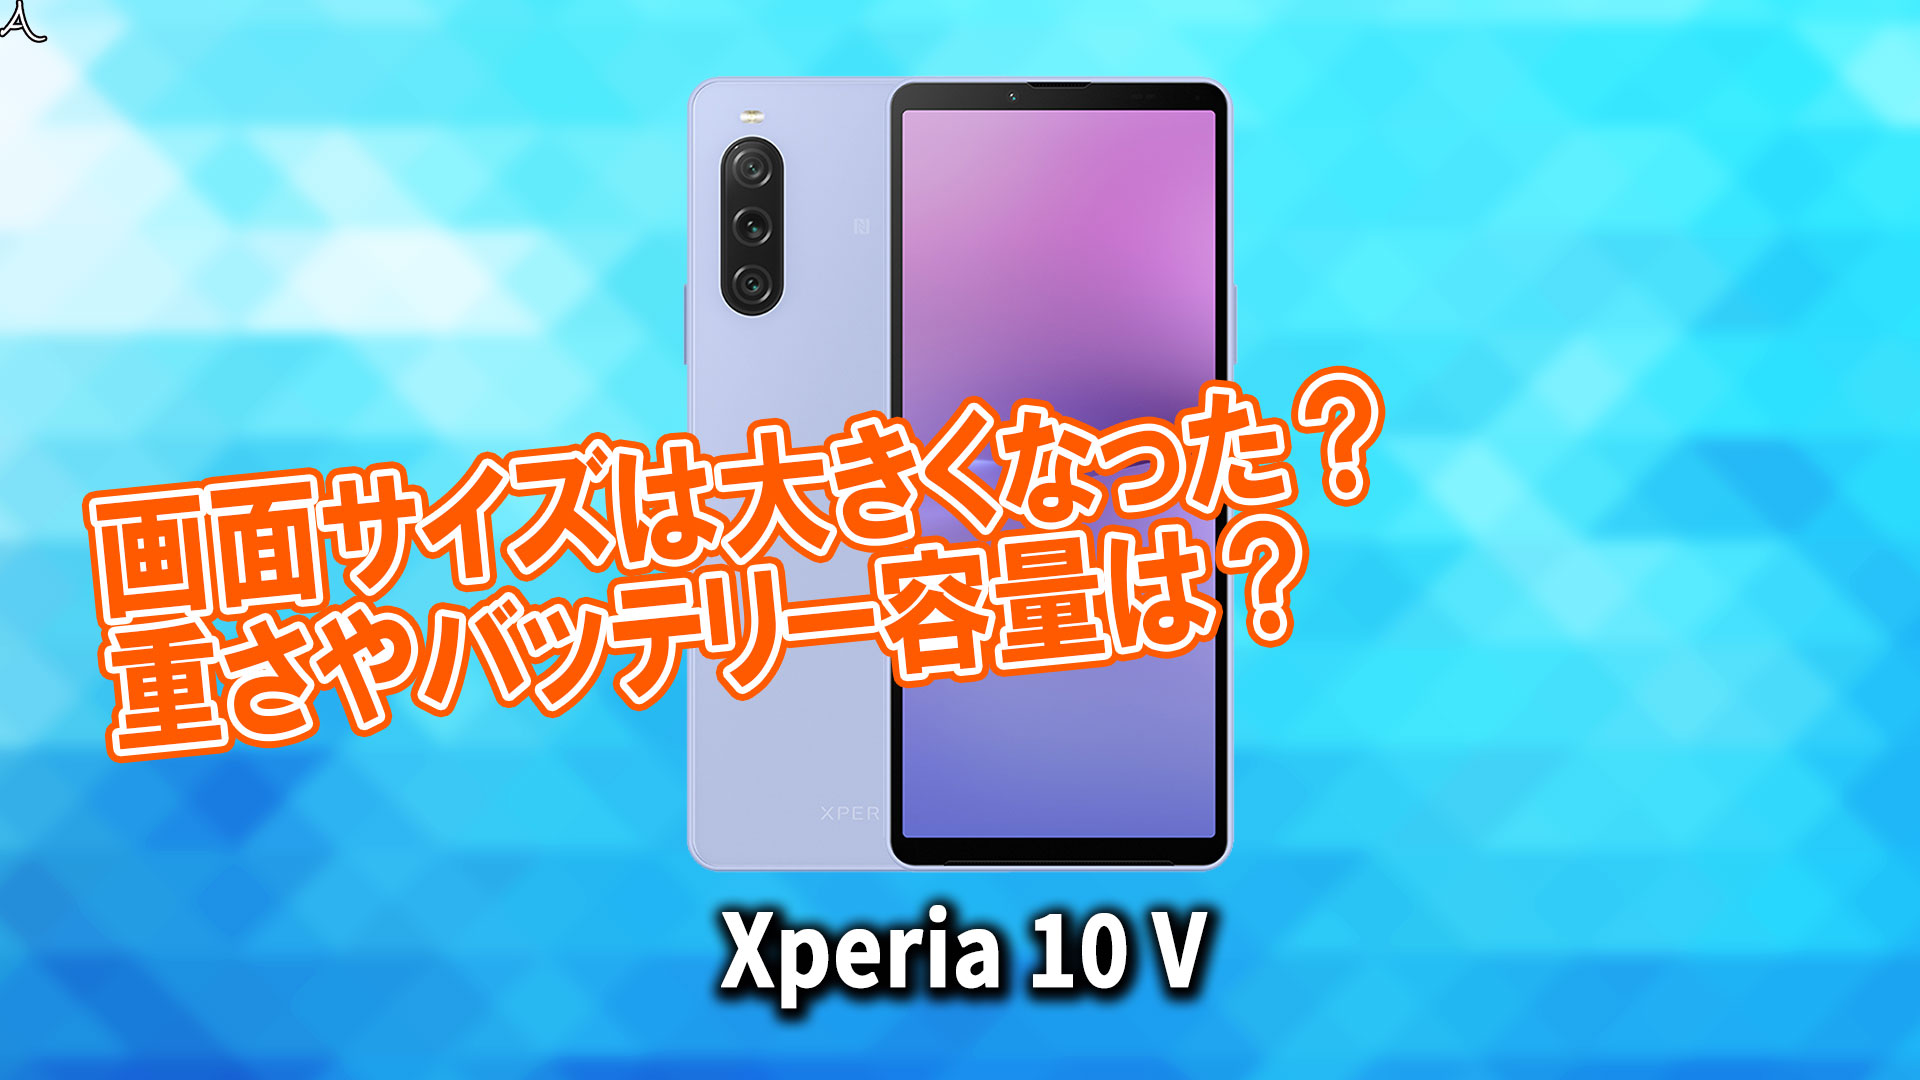 ｢Xperia 10 V｣のサイズや重さを他のスマホと細かく比較